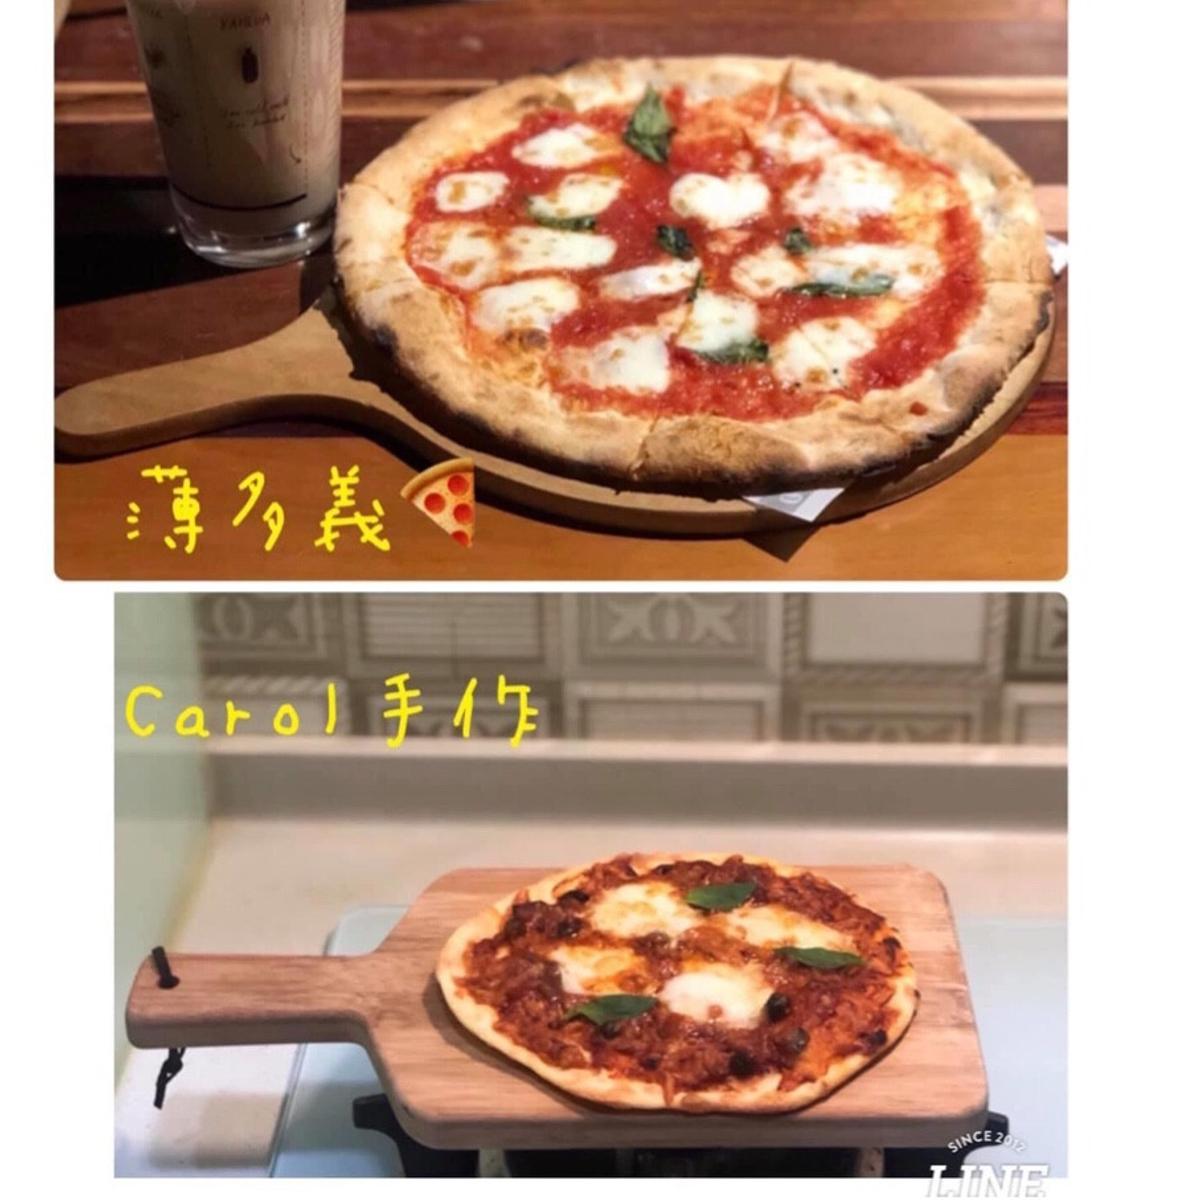 自製薄皮pizza 瑪格麗特 篇 By Carol Huang 愛料理